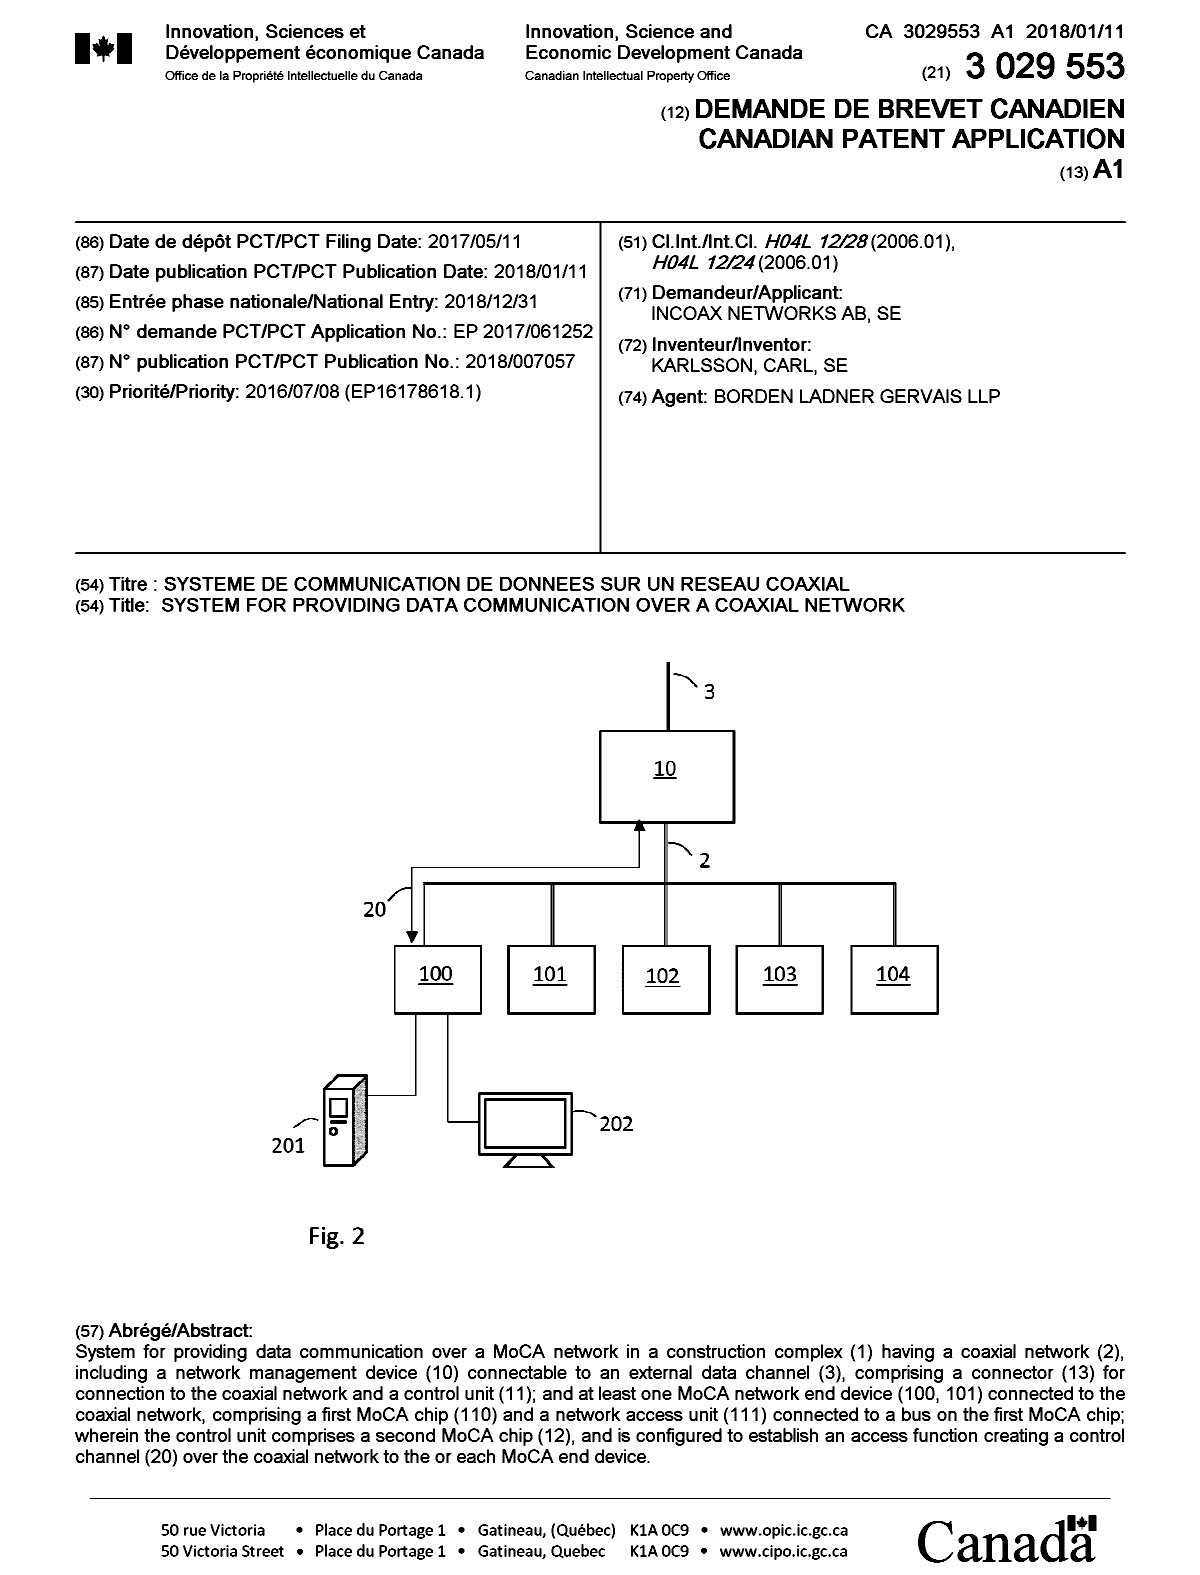 Document de brevet canadien 3029553. Page couverture 20190115. Image 1 de 1